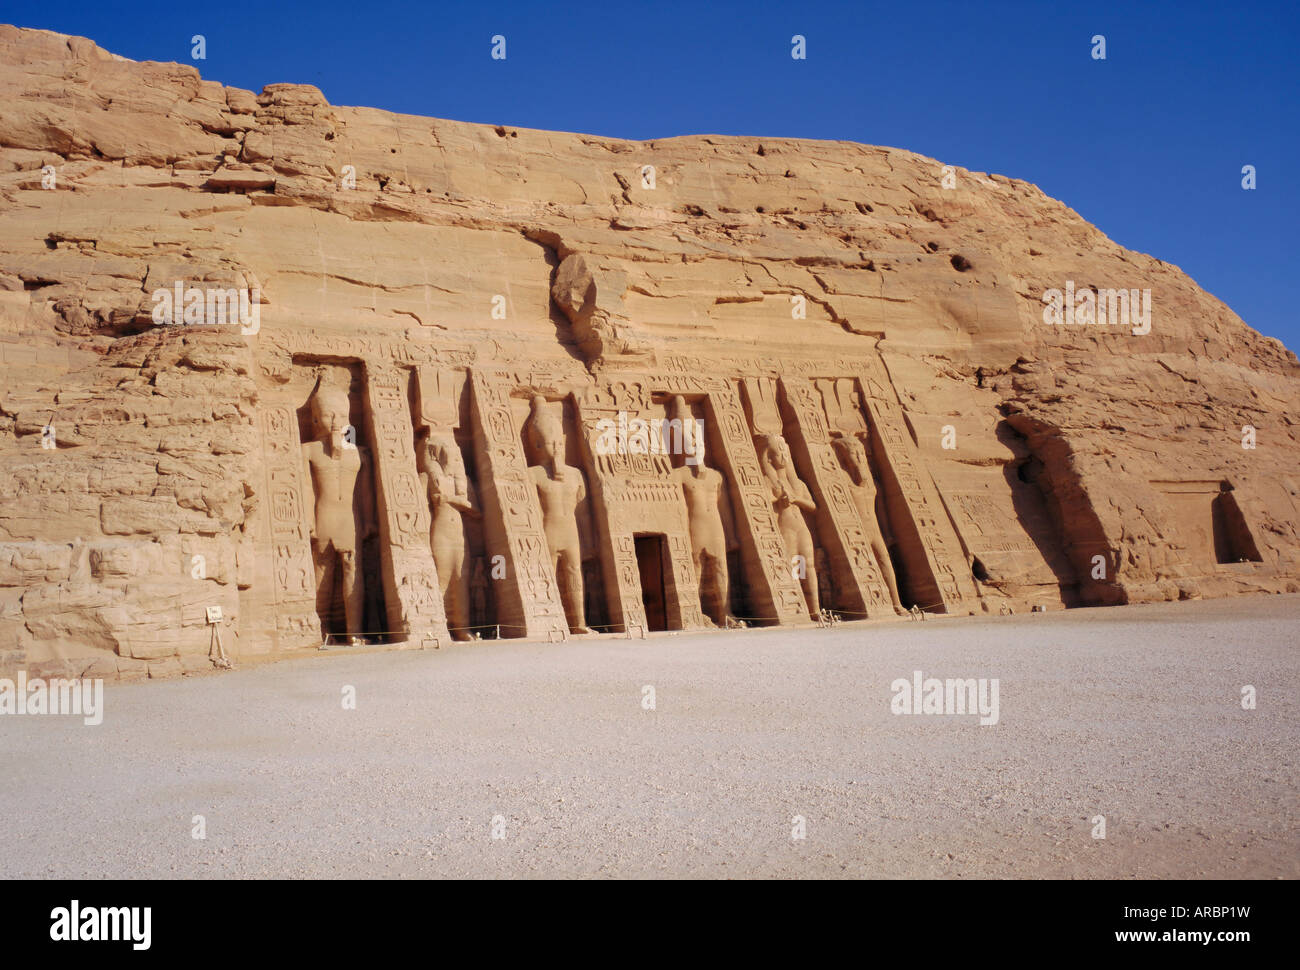 Temple d'Hathor en l'honneur d'Nefretare, a été déplacé lors de la construction du barrage d'Assouan, Abou Simbel, Égypte, Afrique du Nord Banque D'Images